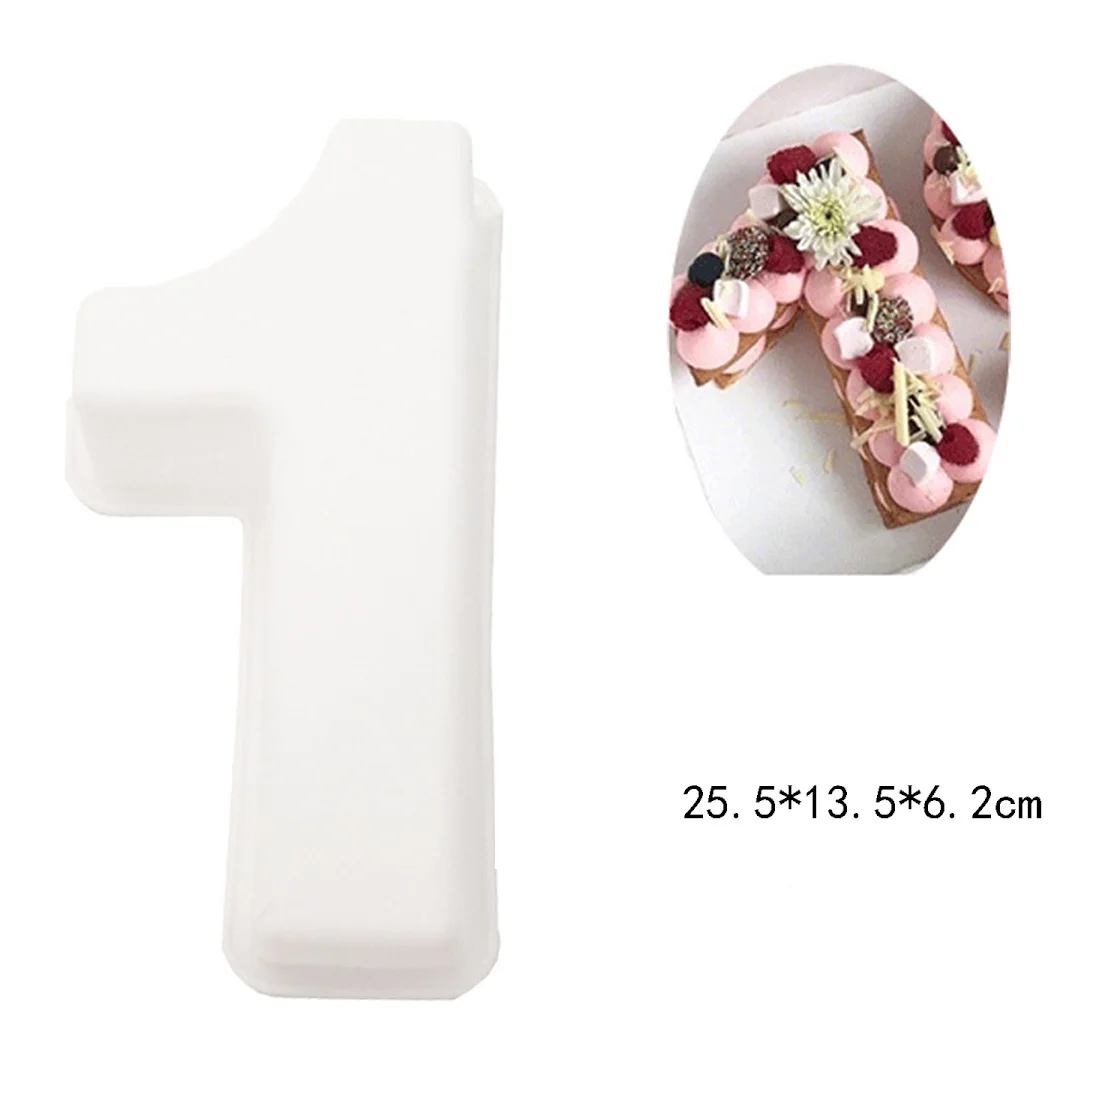 10 дюймов DIY силиконовые помадки торт фигура формы торт украшения инструменты шоколадная форма мини стиль конфеты глина плесень 0-9